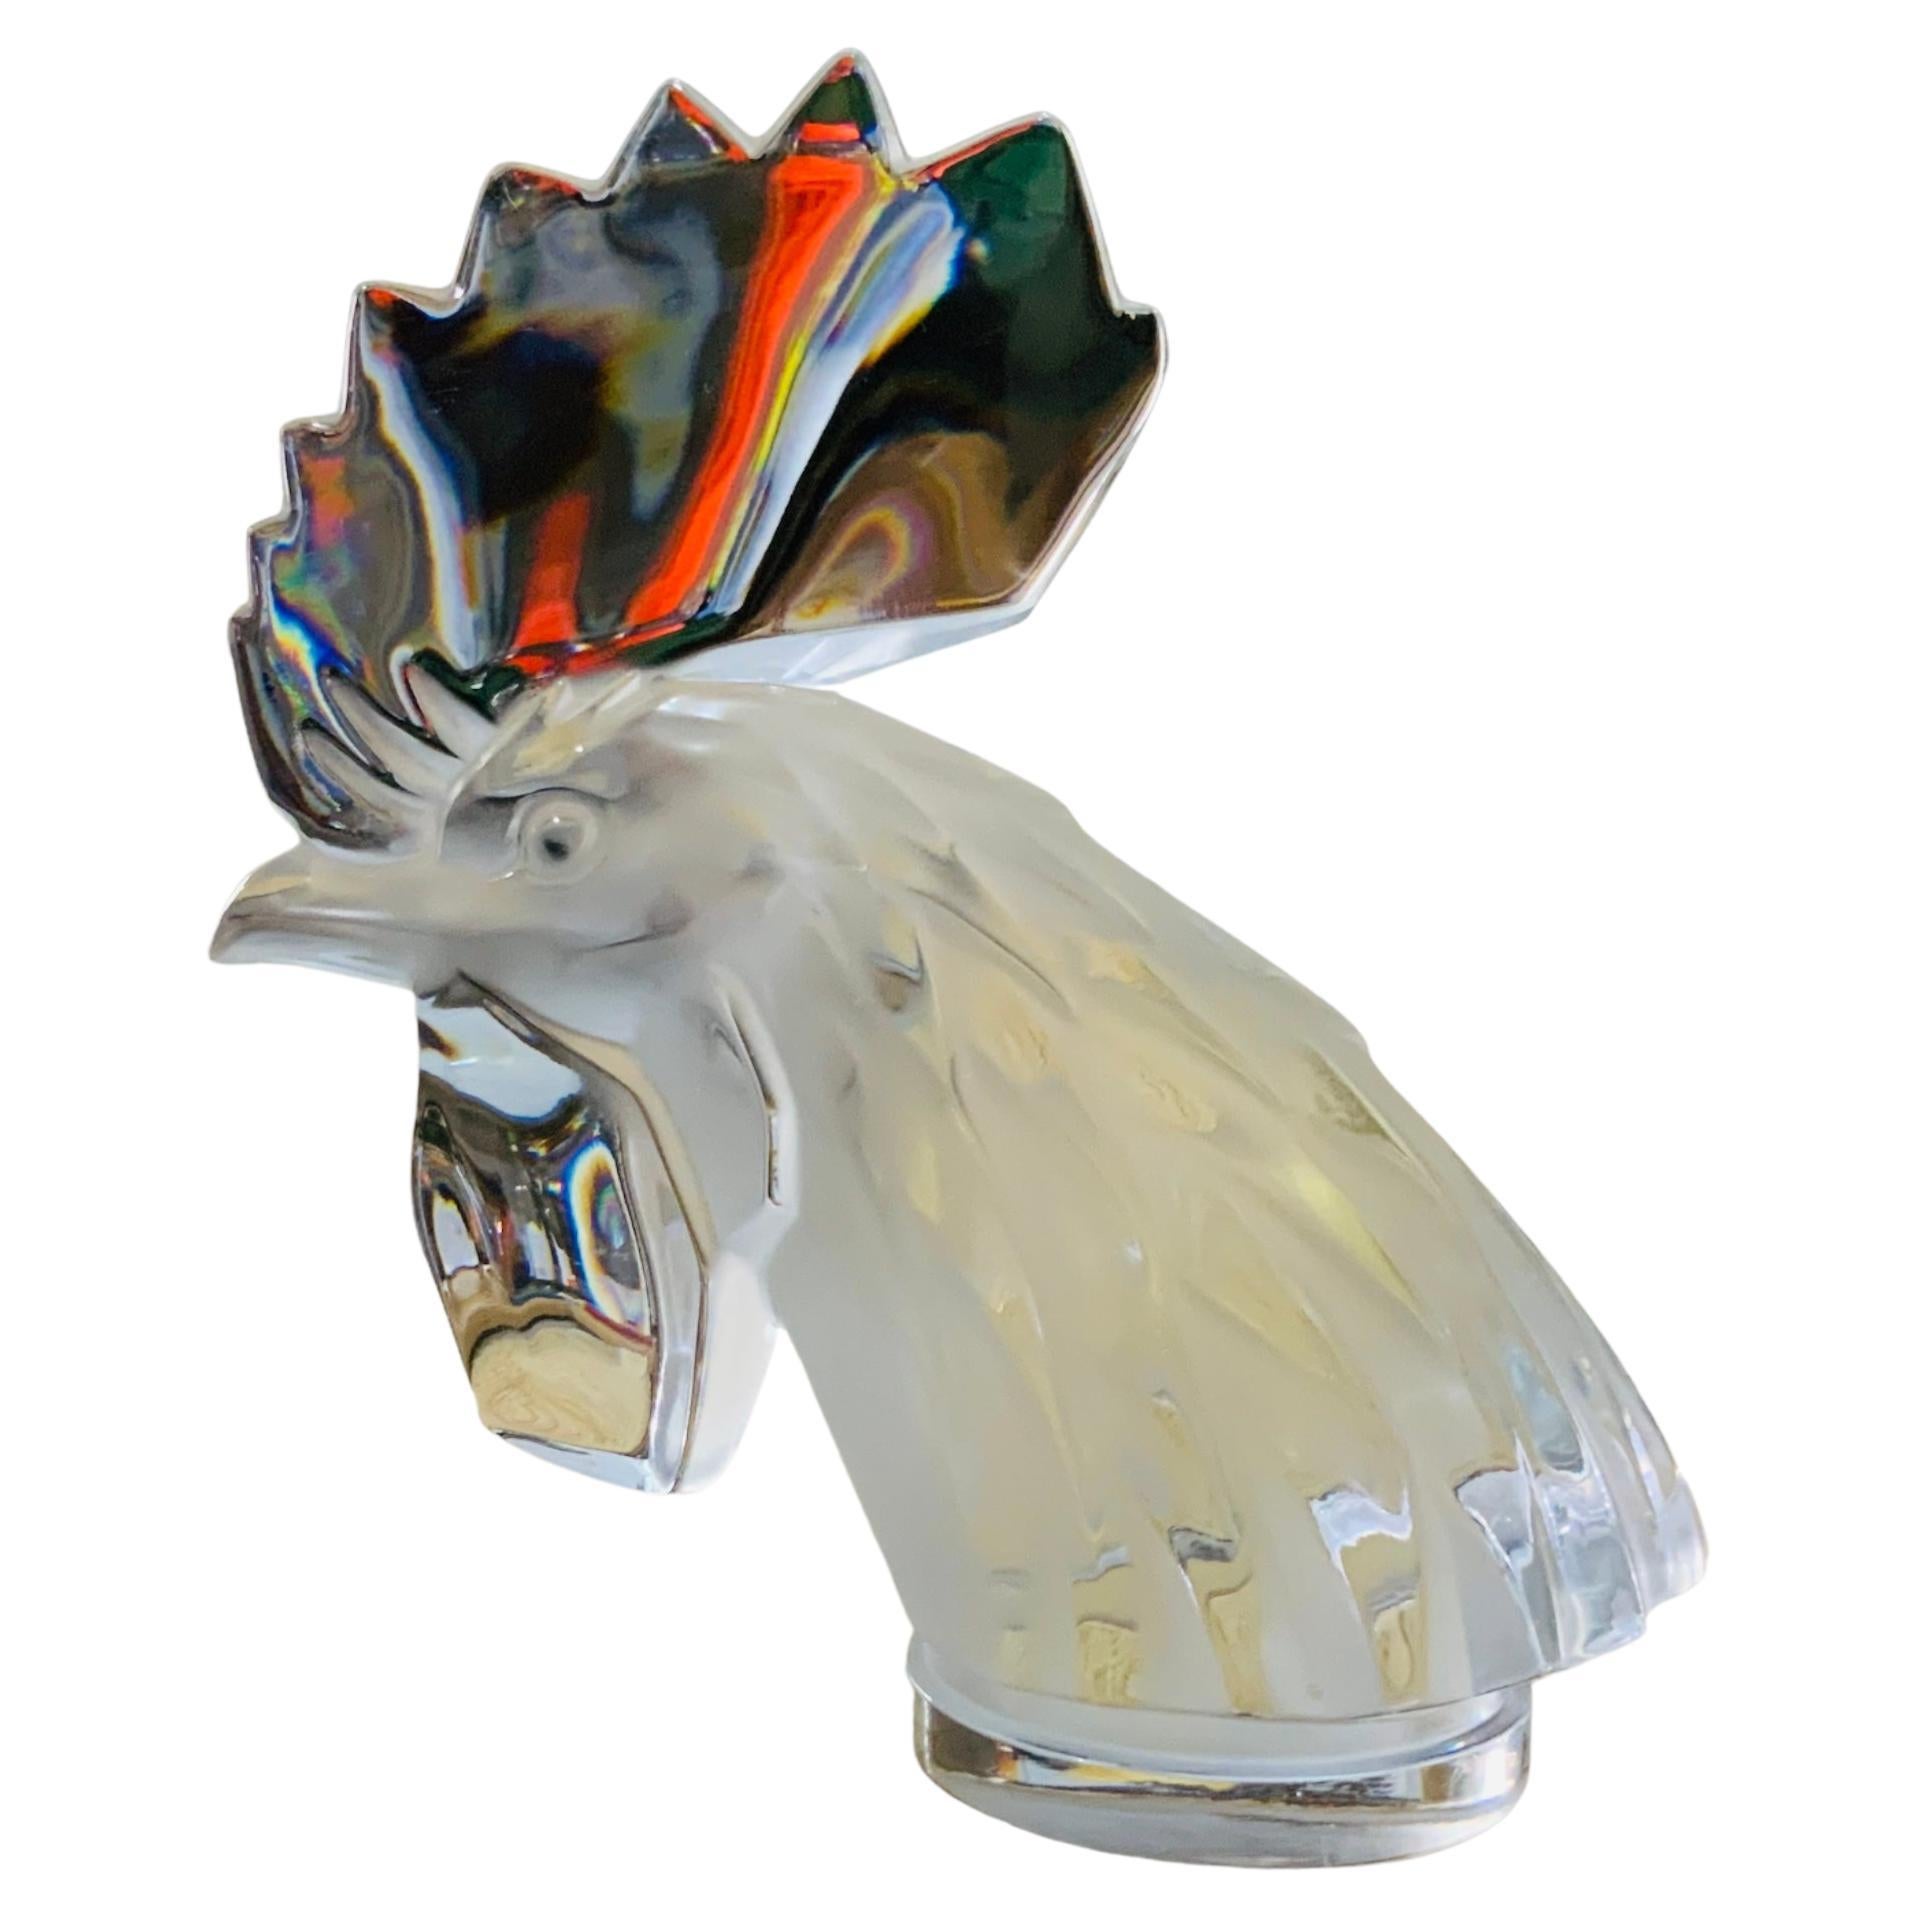 Il s'agit d'un petit buste/papier en cristal de Lalique Mascotte Coq Tete de Coq. Il représente un coq en cristal clair très bien réalisé. Il porte le poinçon de Lalique France gravé à l'acide sous la base.